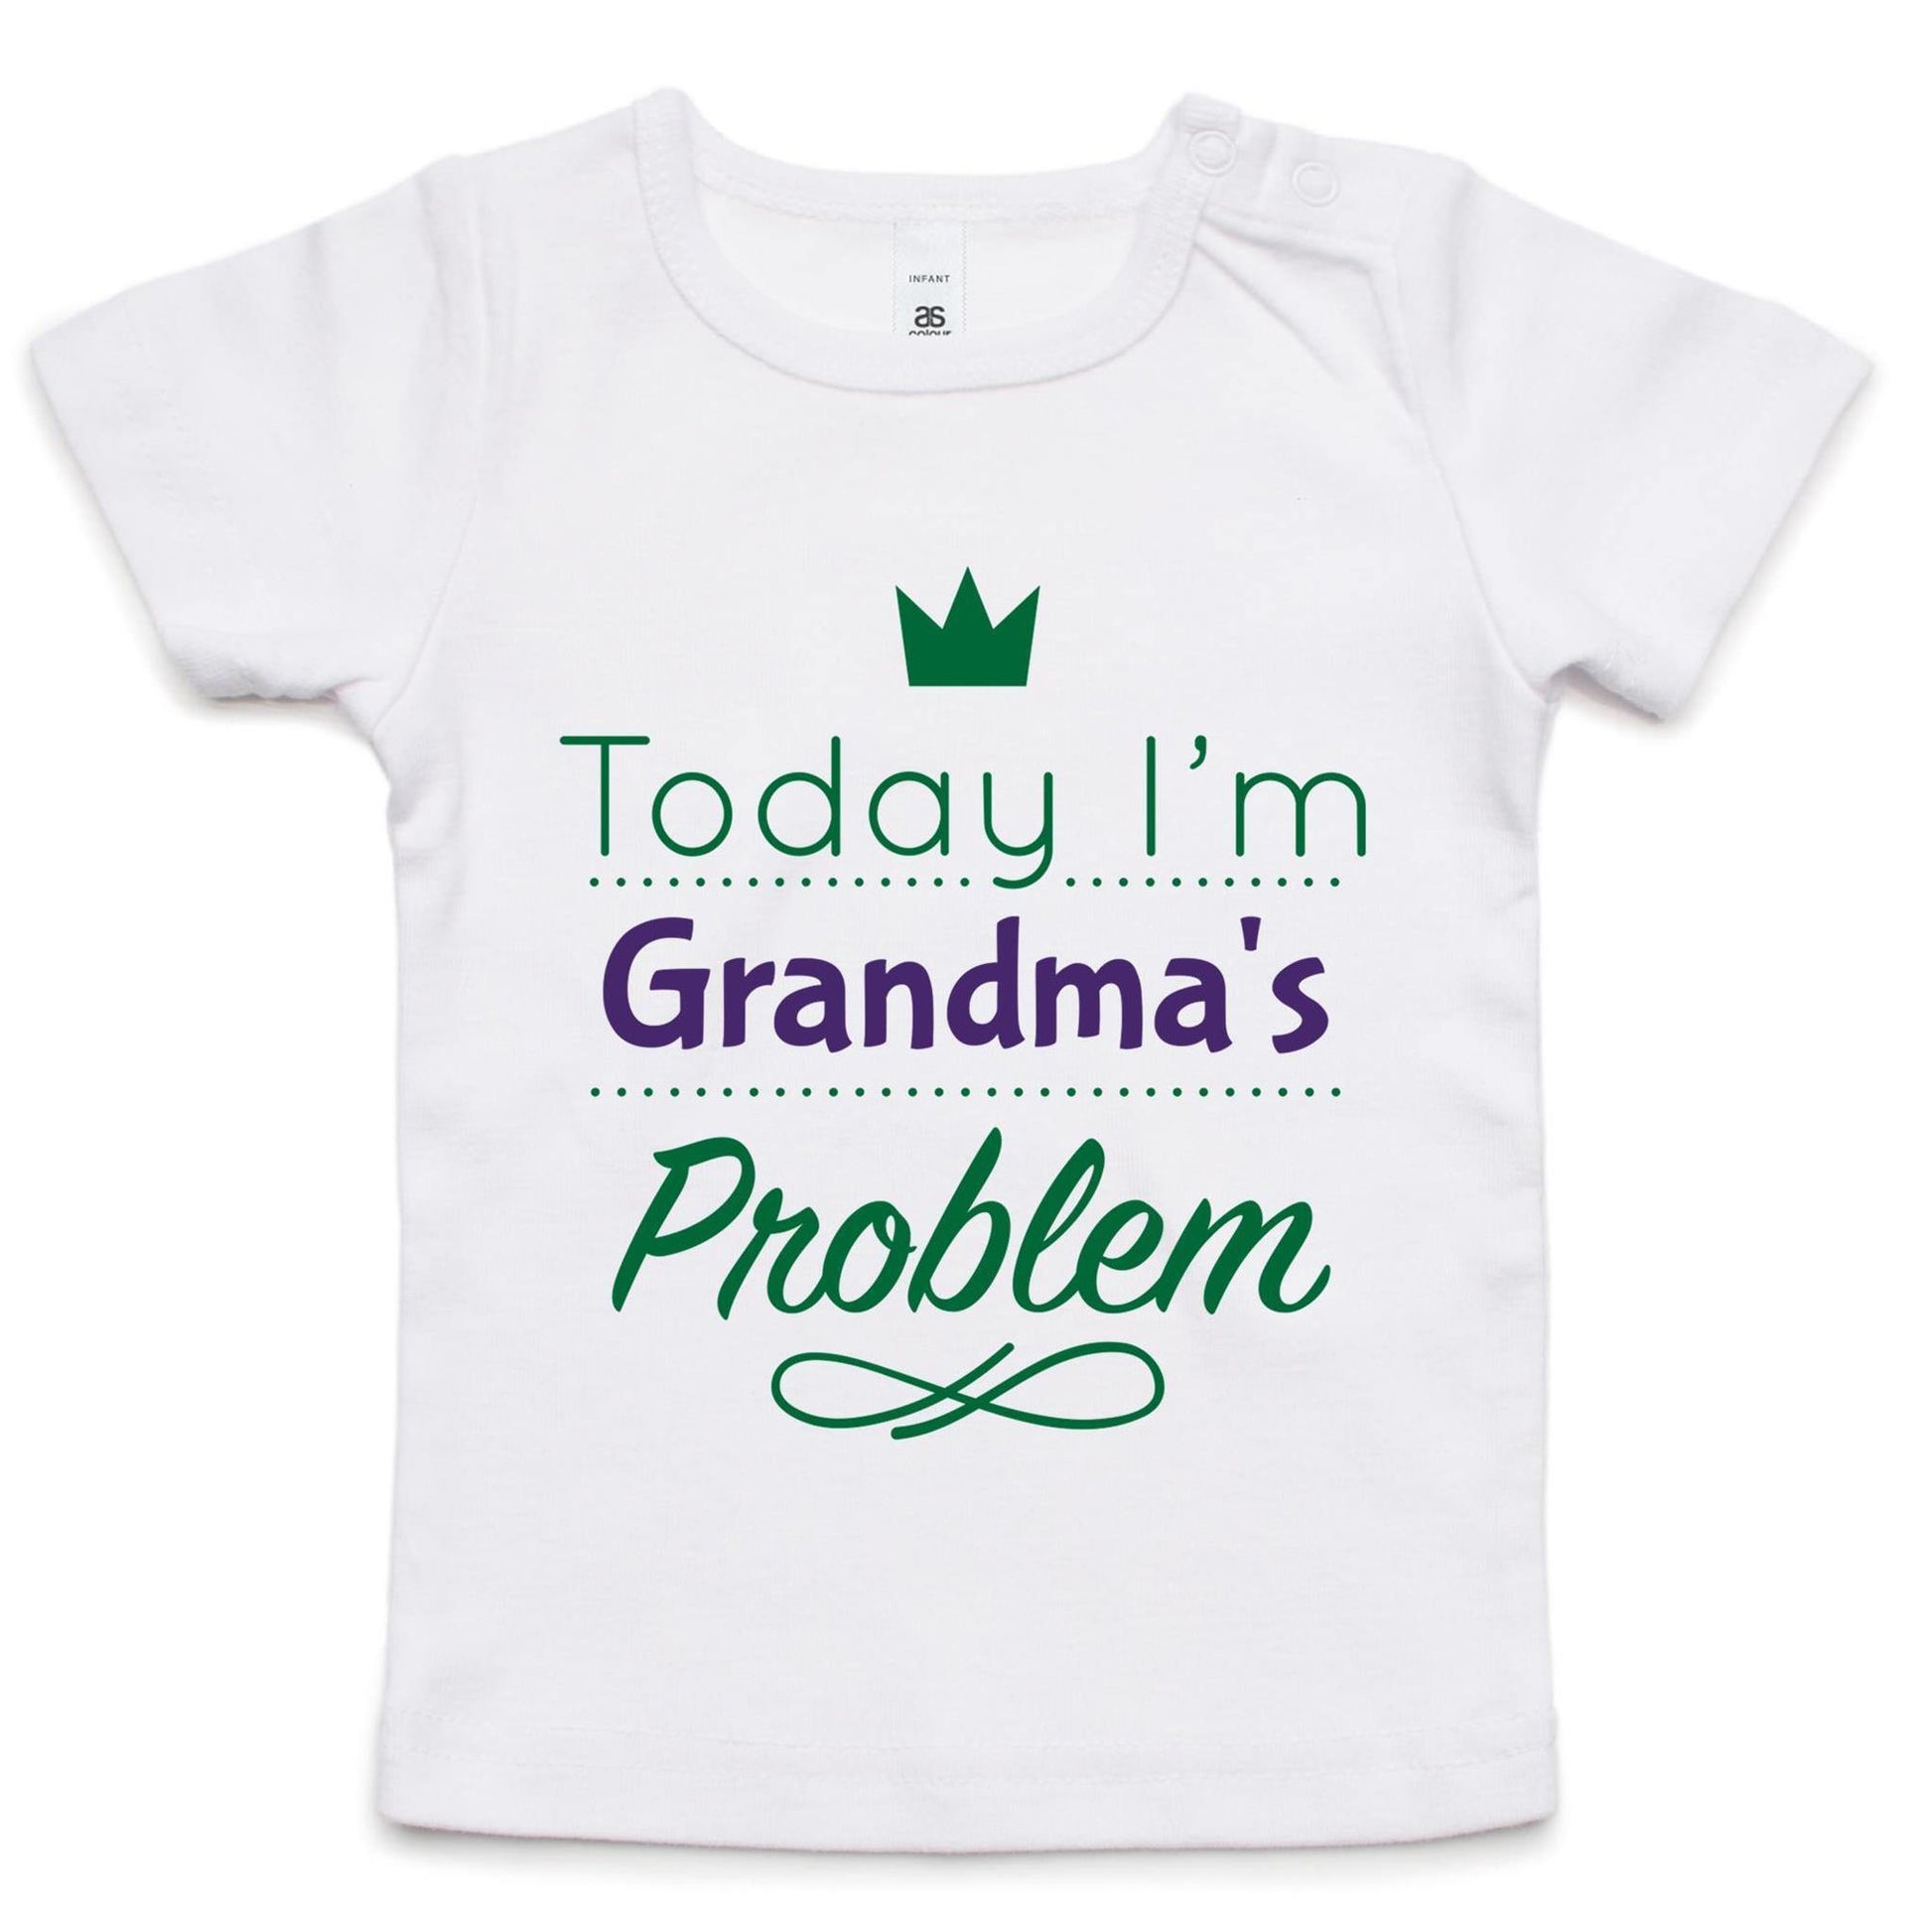 Today I'm Grandma's Problem - Baby T-shirt White Baby T-shirt kids